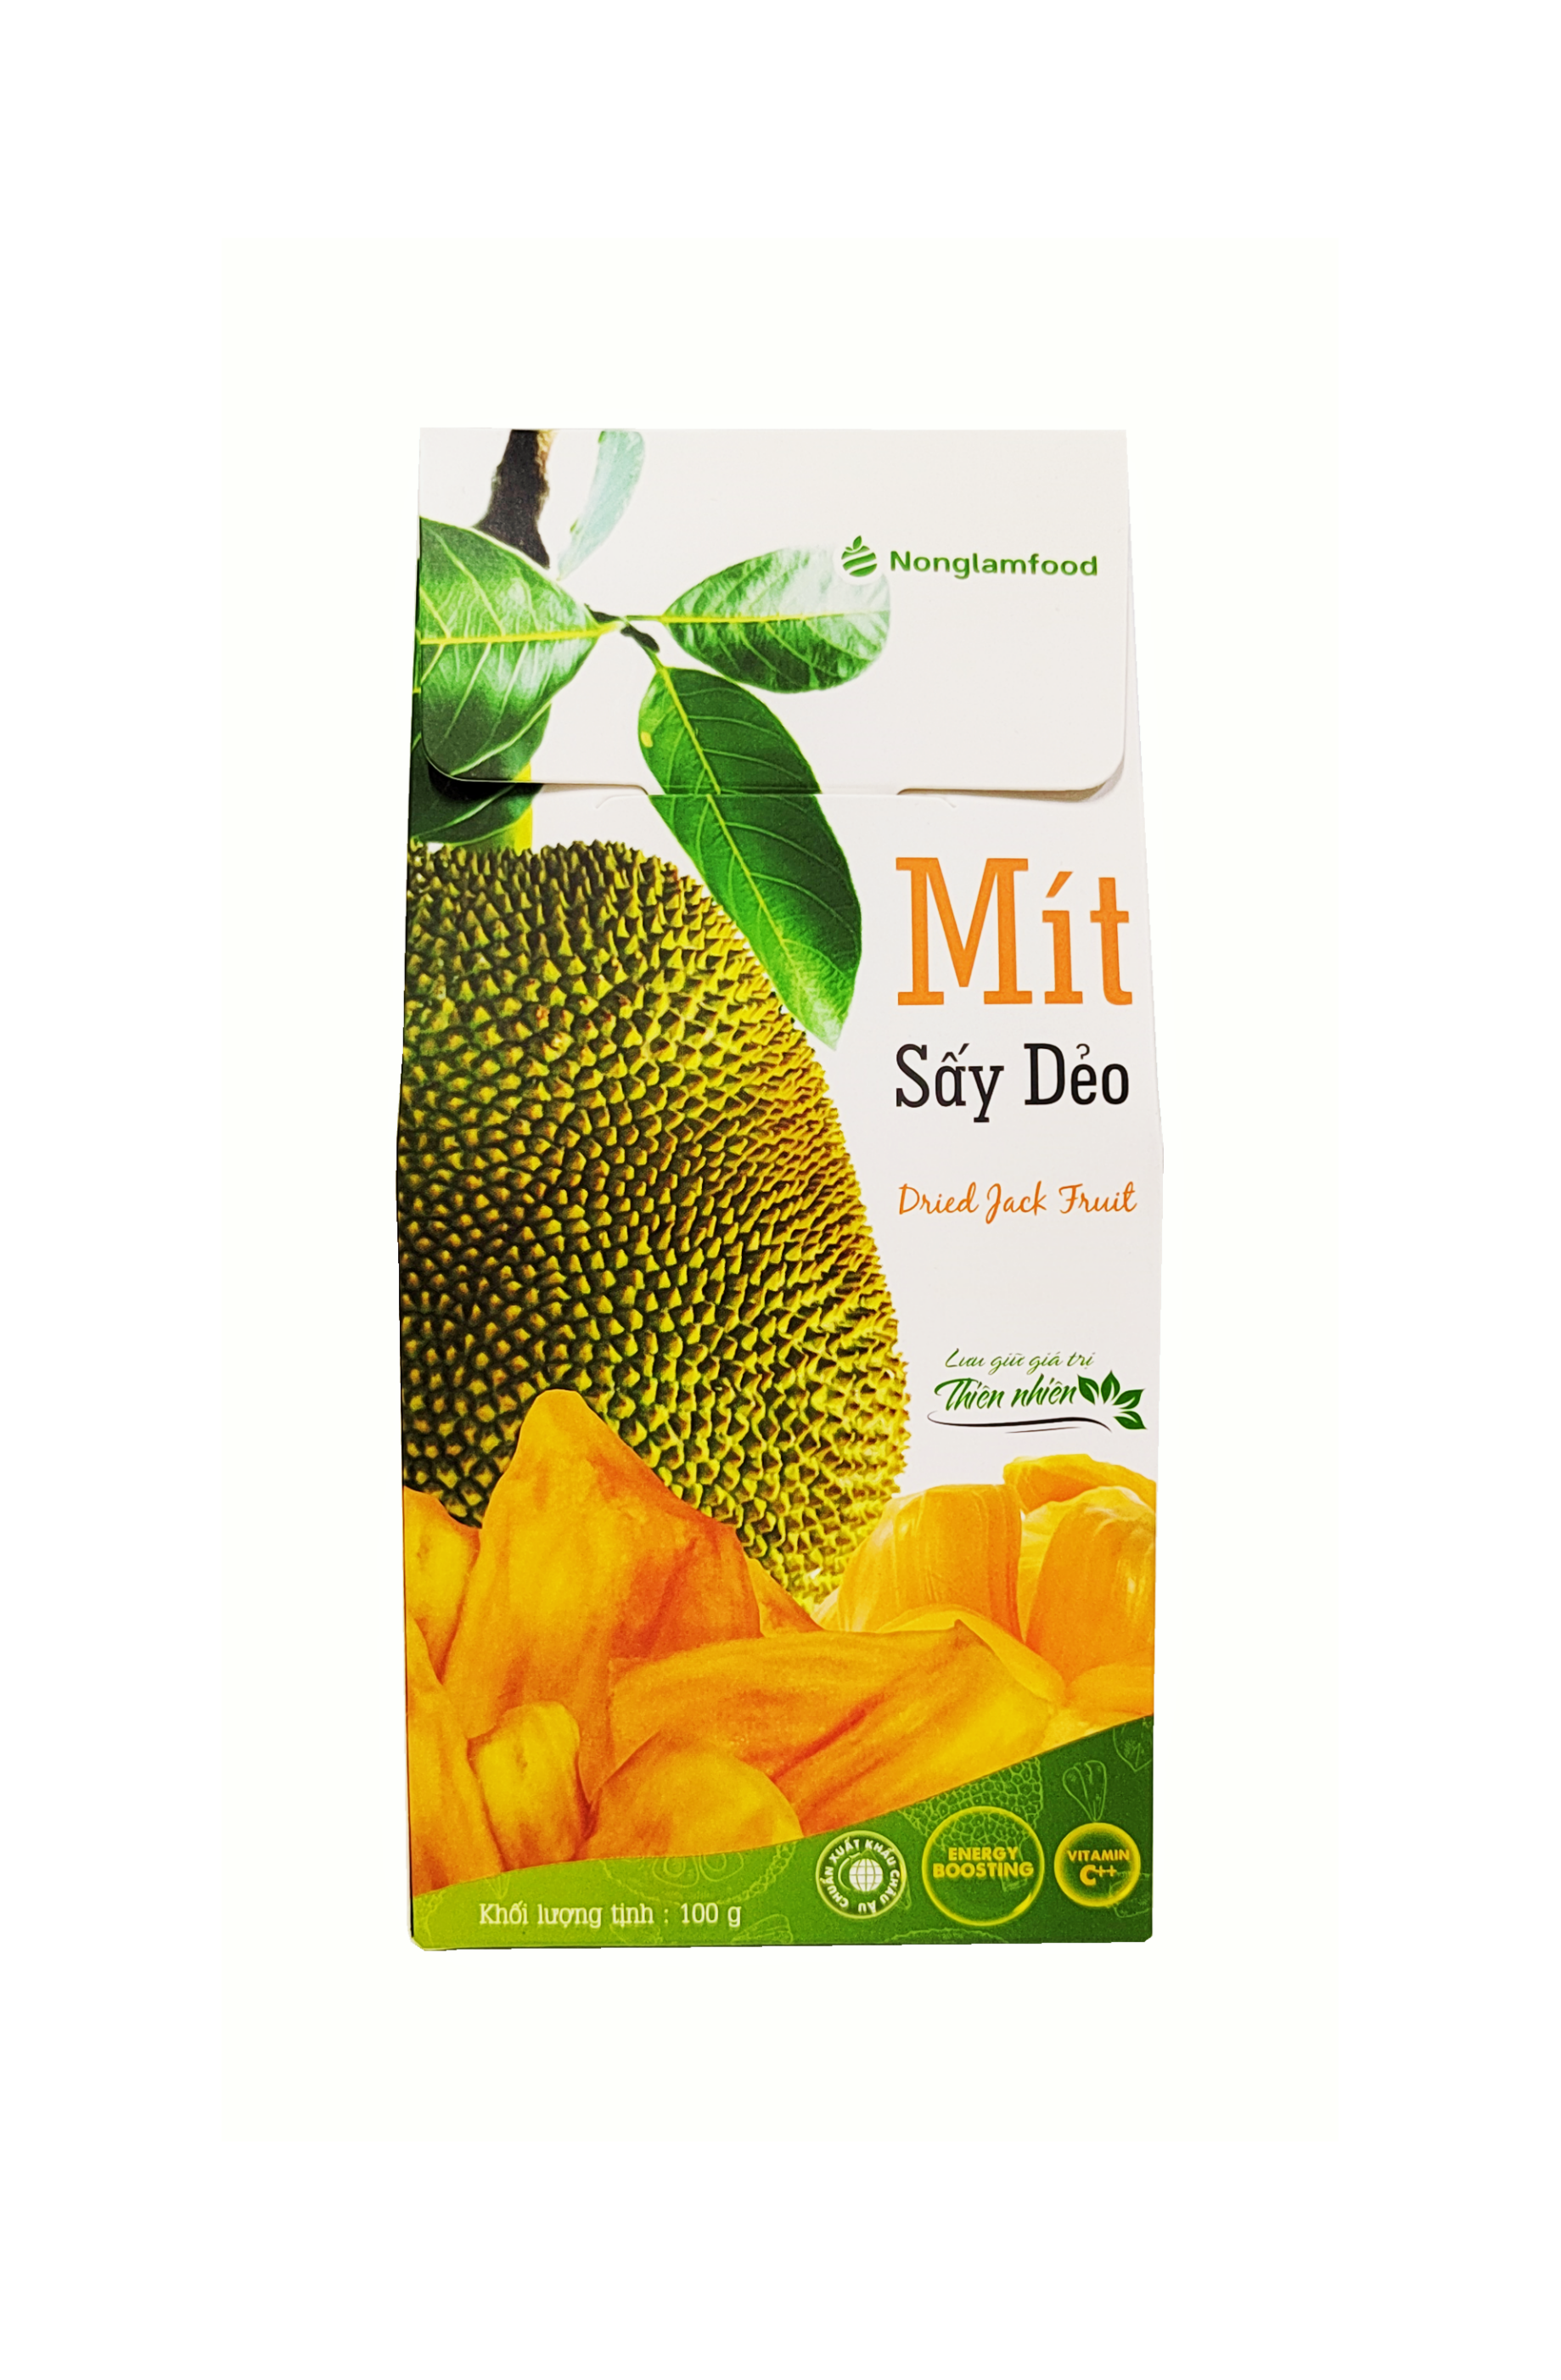 Dried Jackfruit / Mit Say Deo 100g - Thien Nhien Vietnam